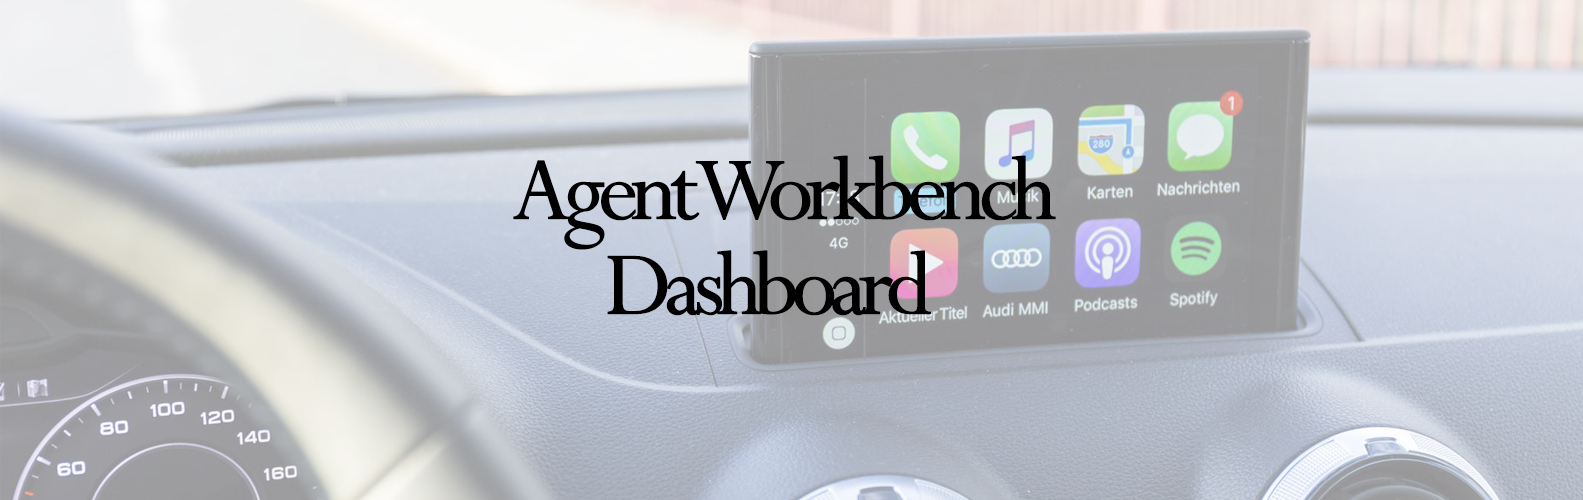 Agent Workbench Dashboard Banner